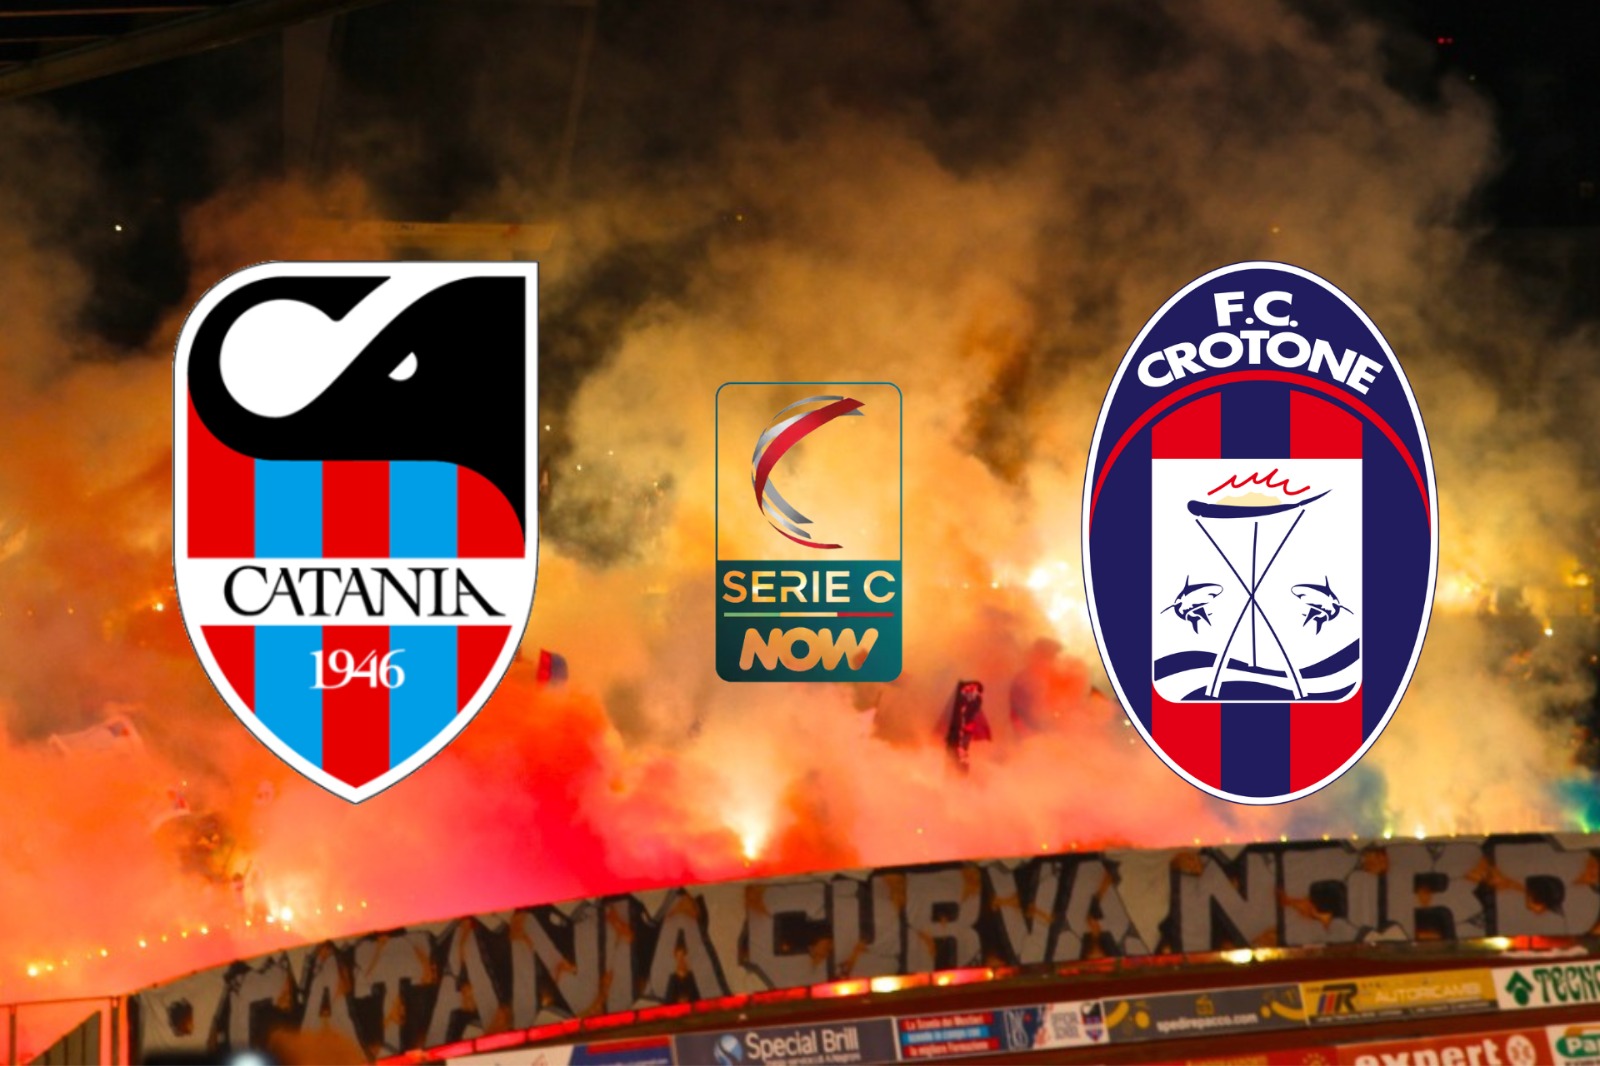 Catania – Crotone 0 – 1: sfortuna e imprecisione, gli etnei pagano dazio.